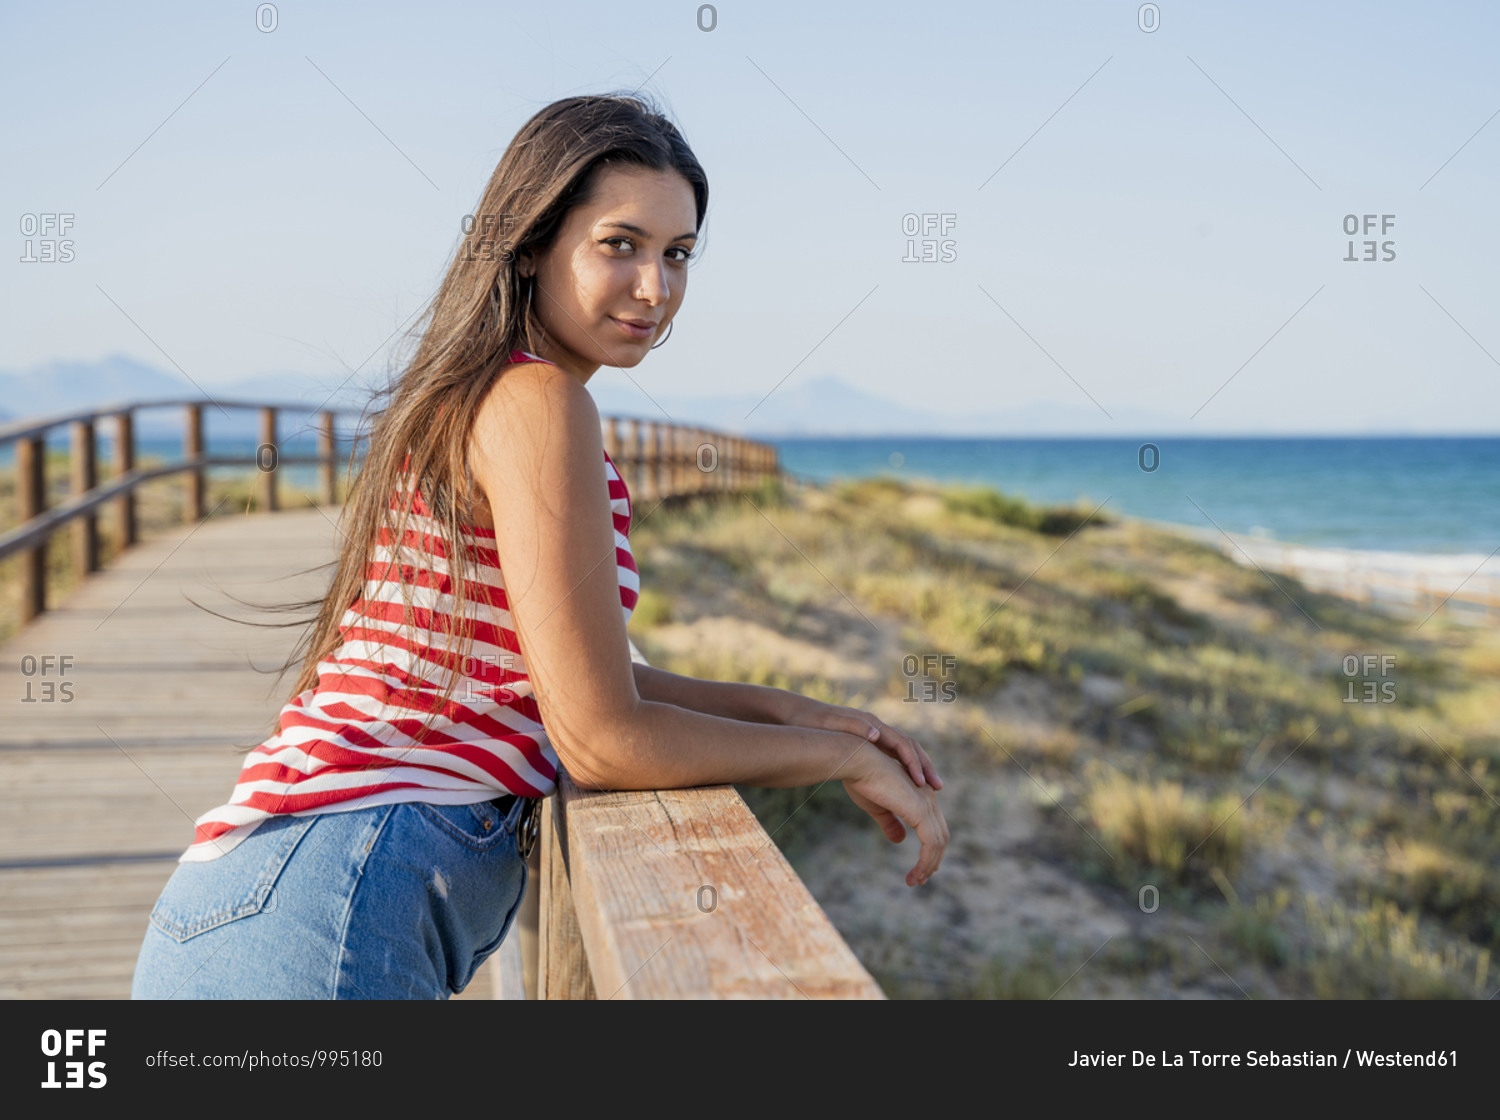 Bottomless girl beach